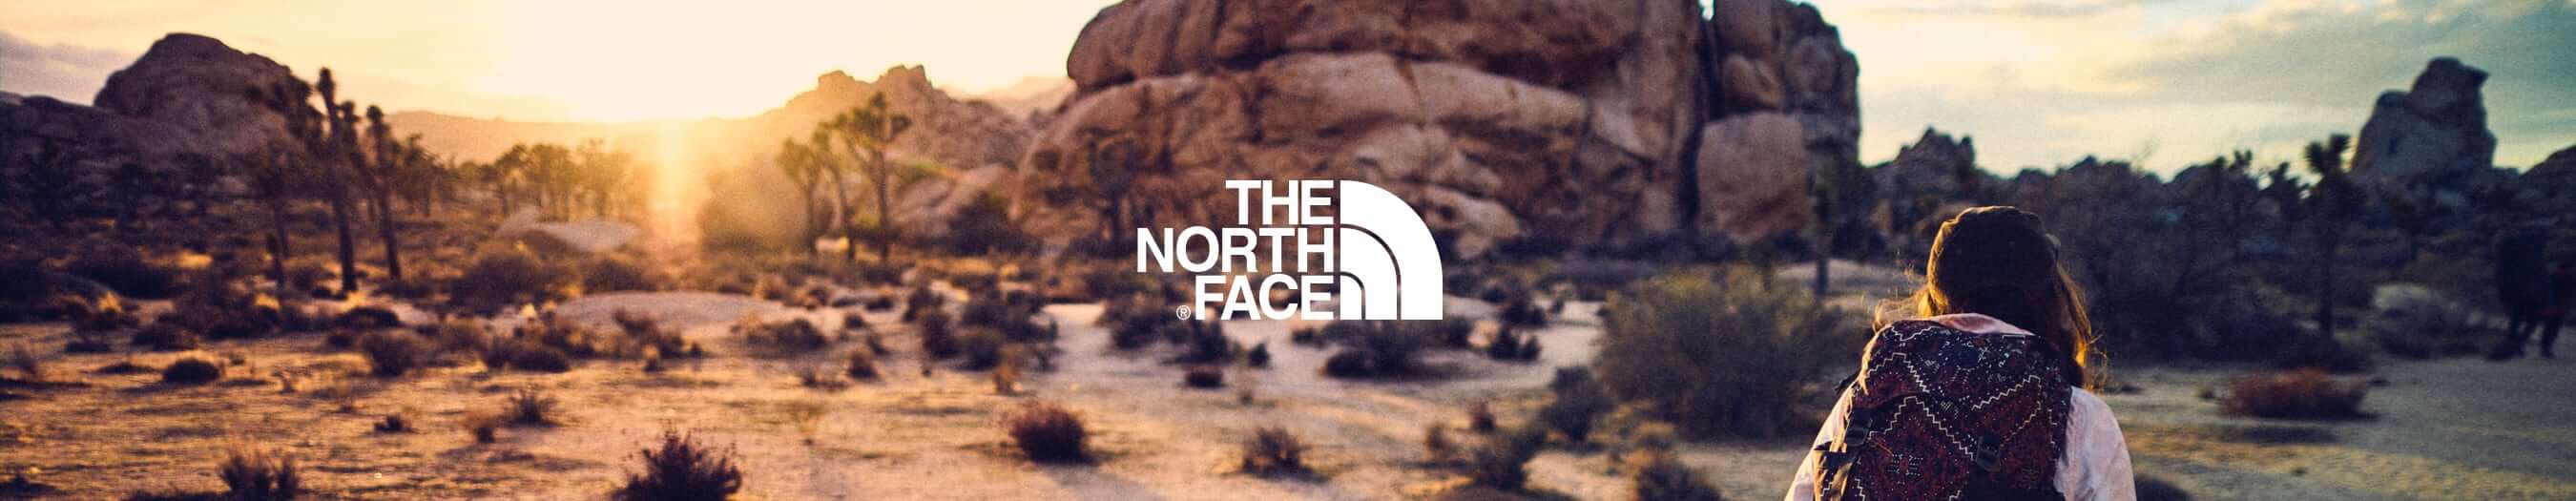 The North Face ürünleri